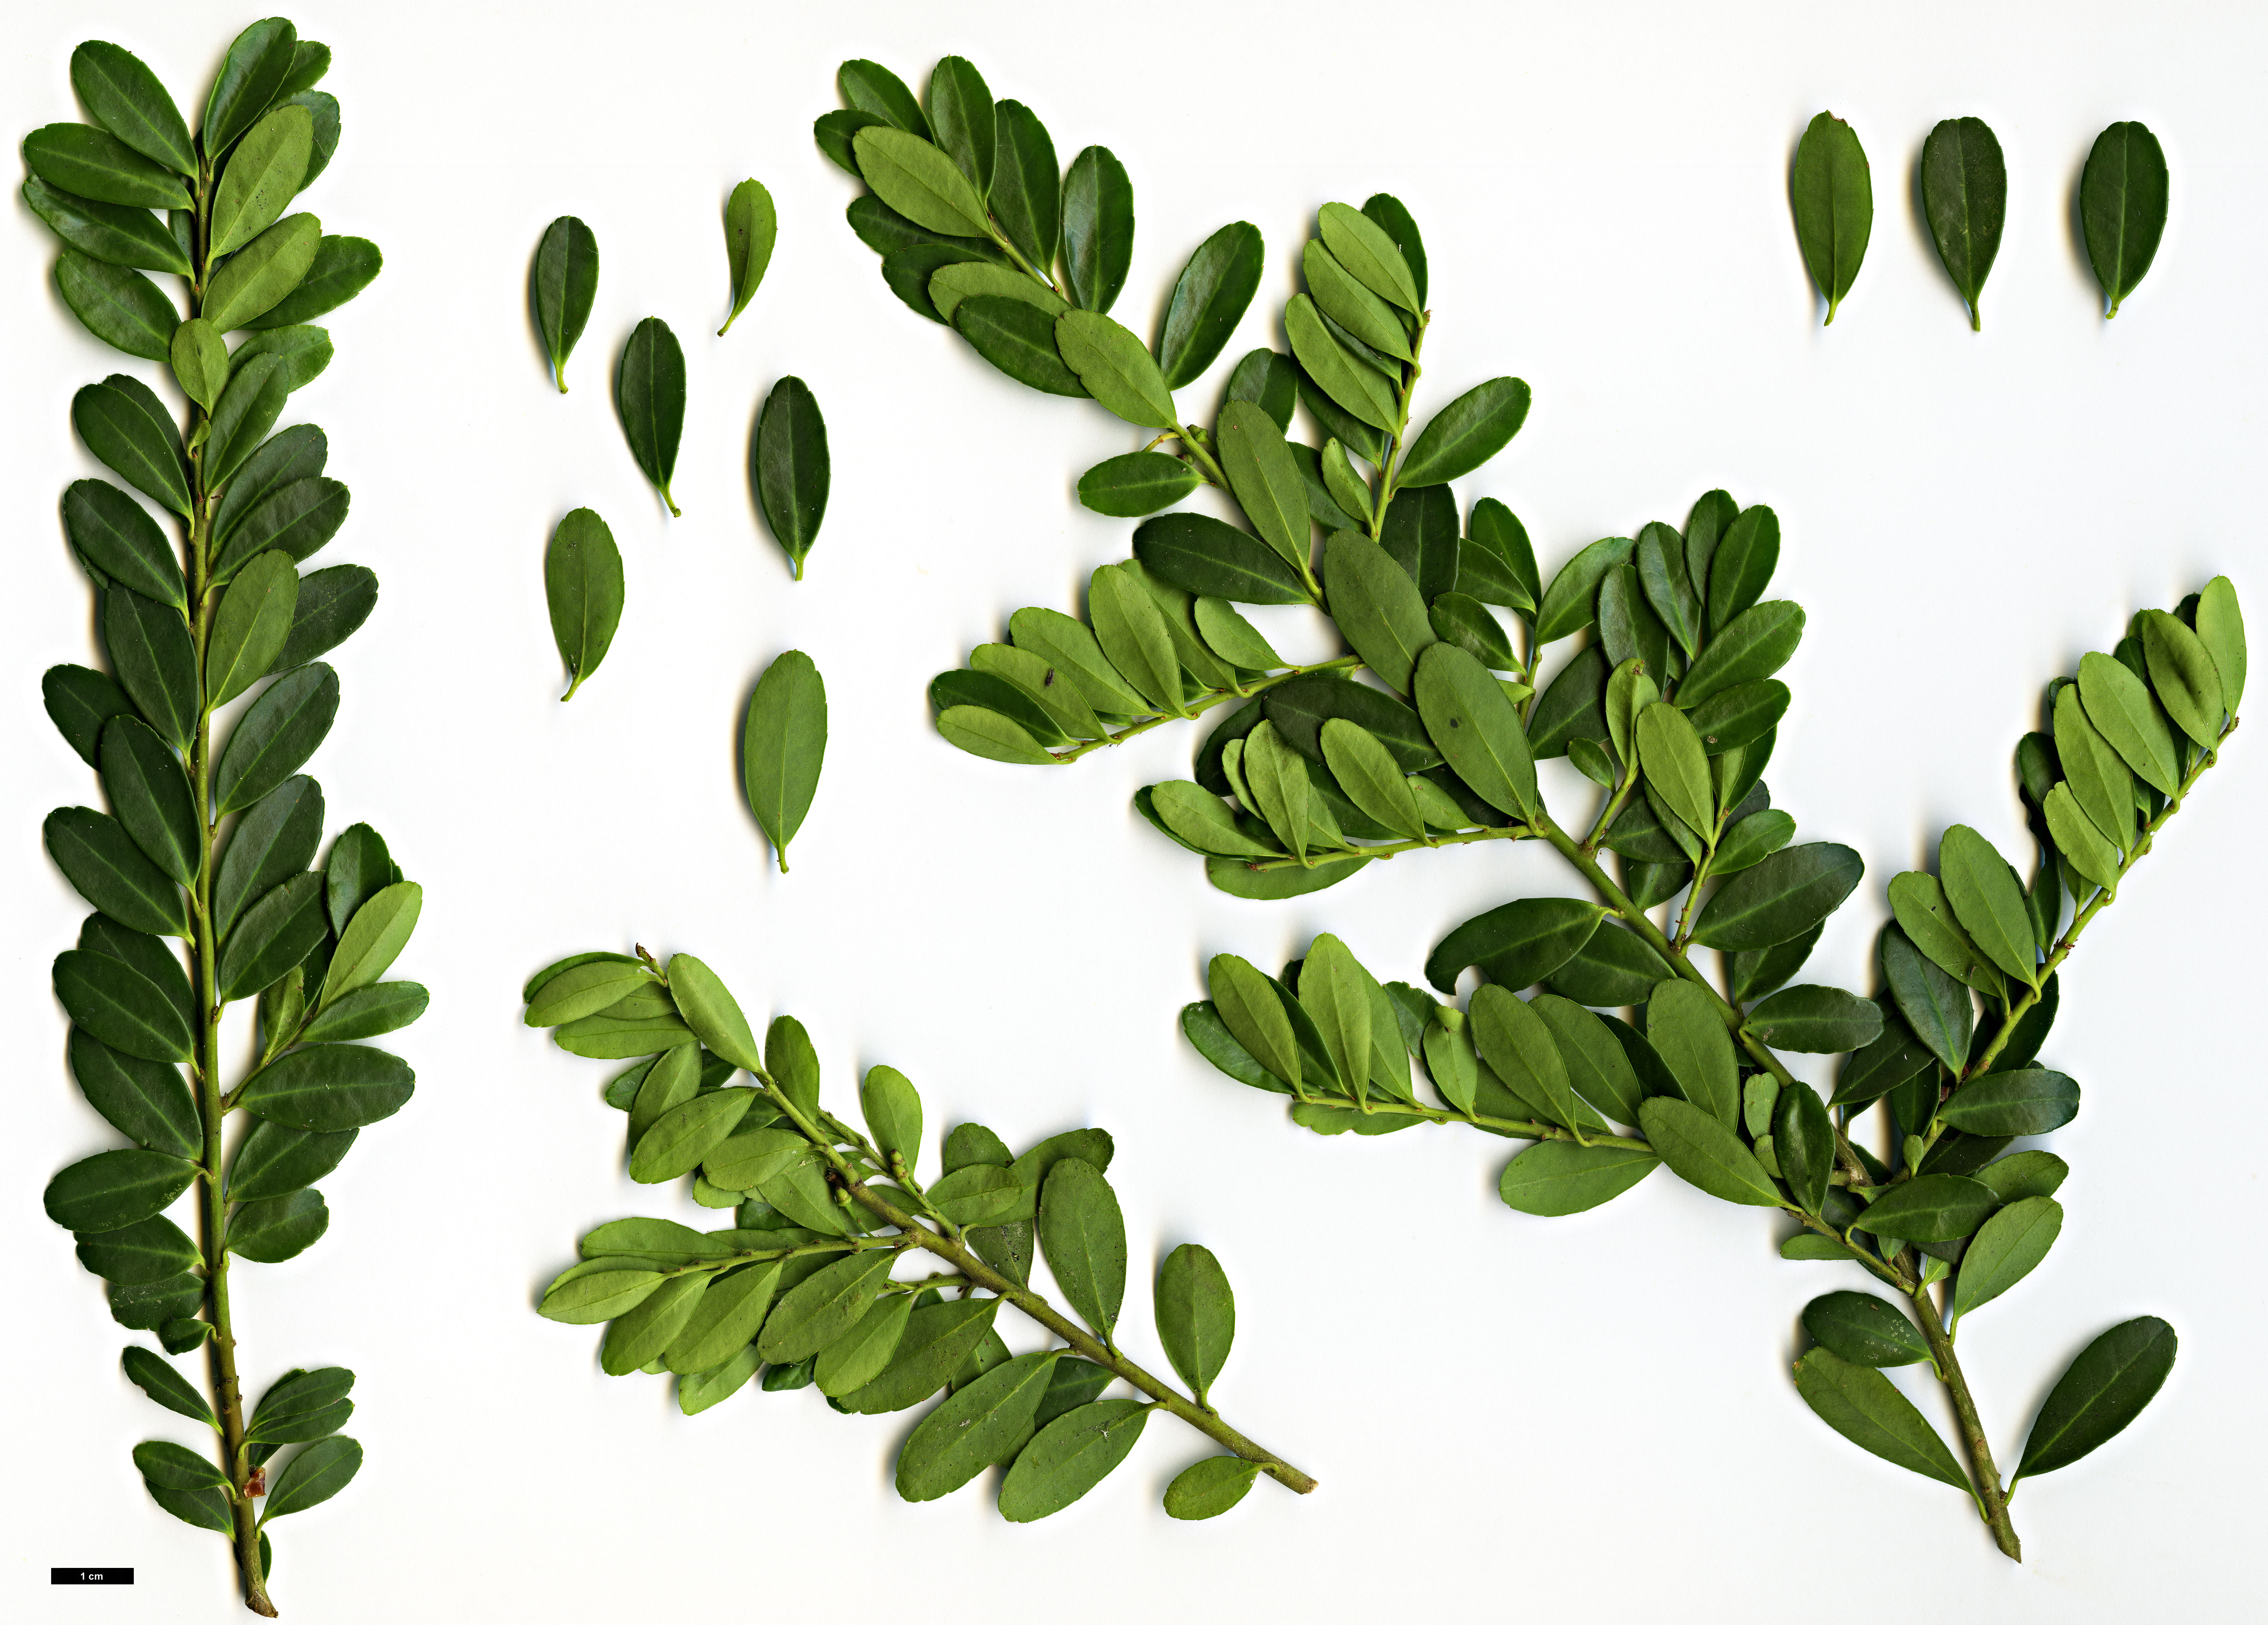 High resolution image: Family: Aquifoliaceae - Genus: Ilex - Taxon: crenata